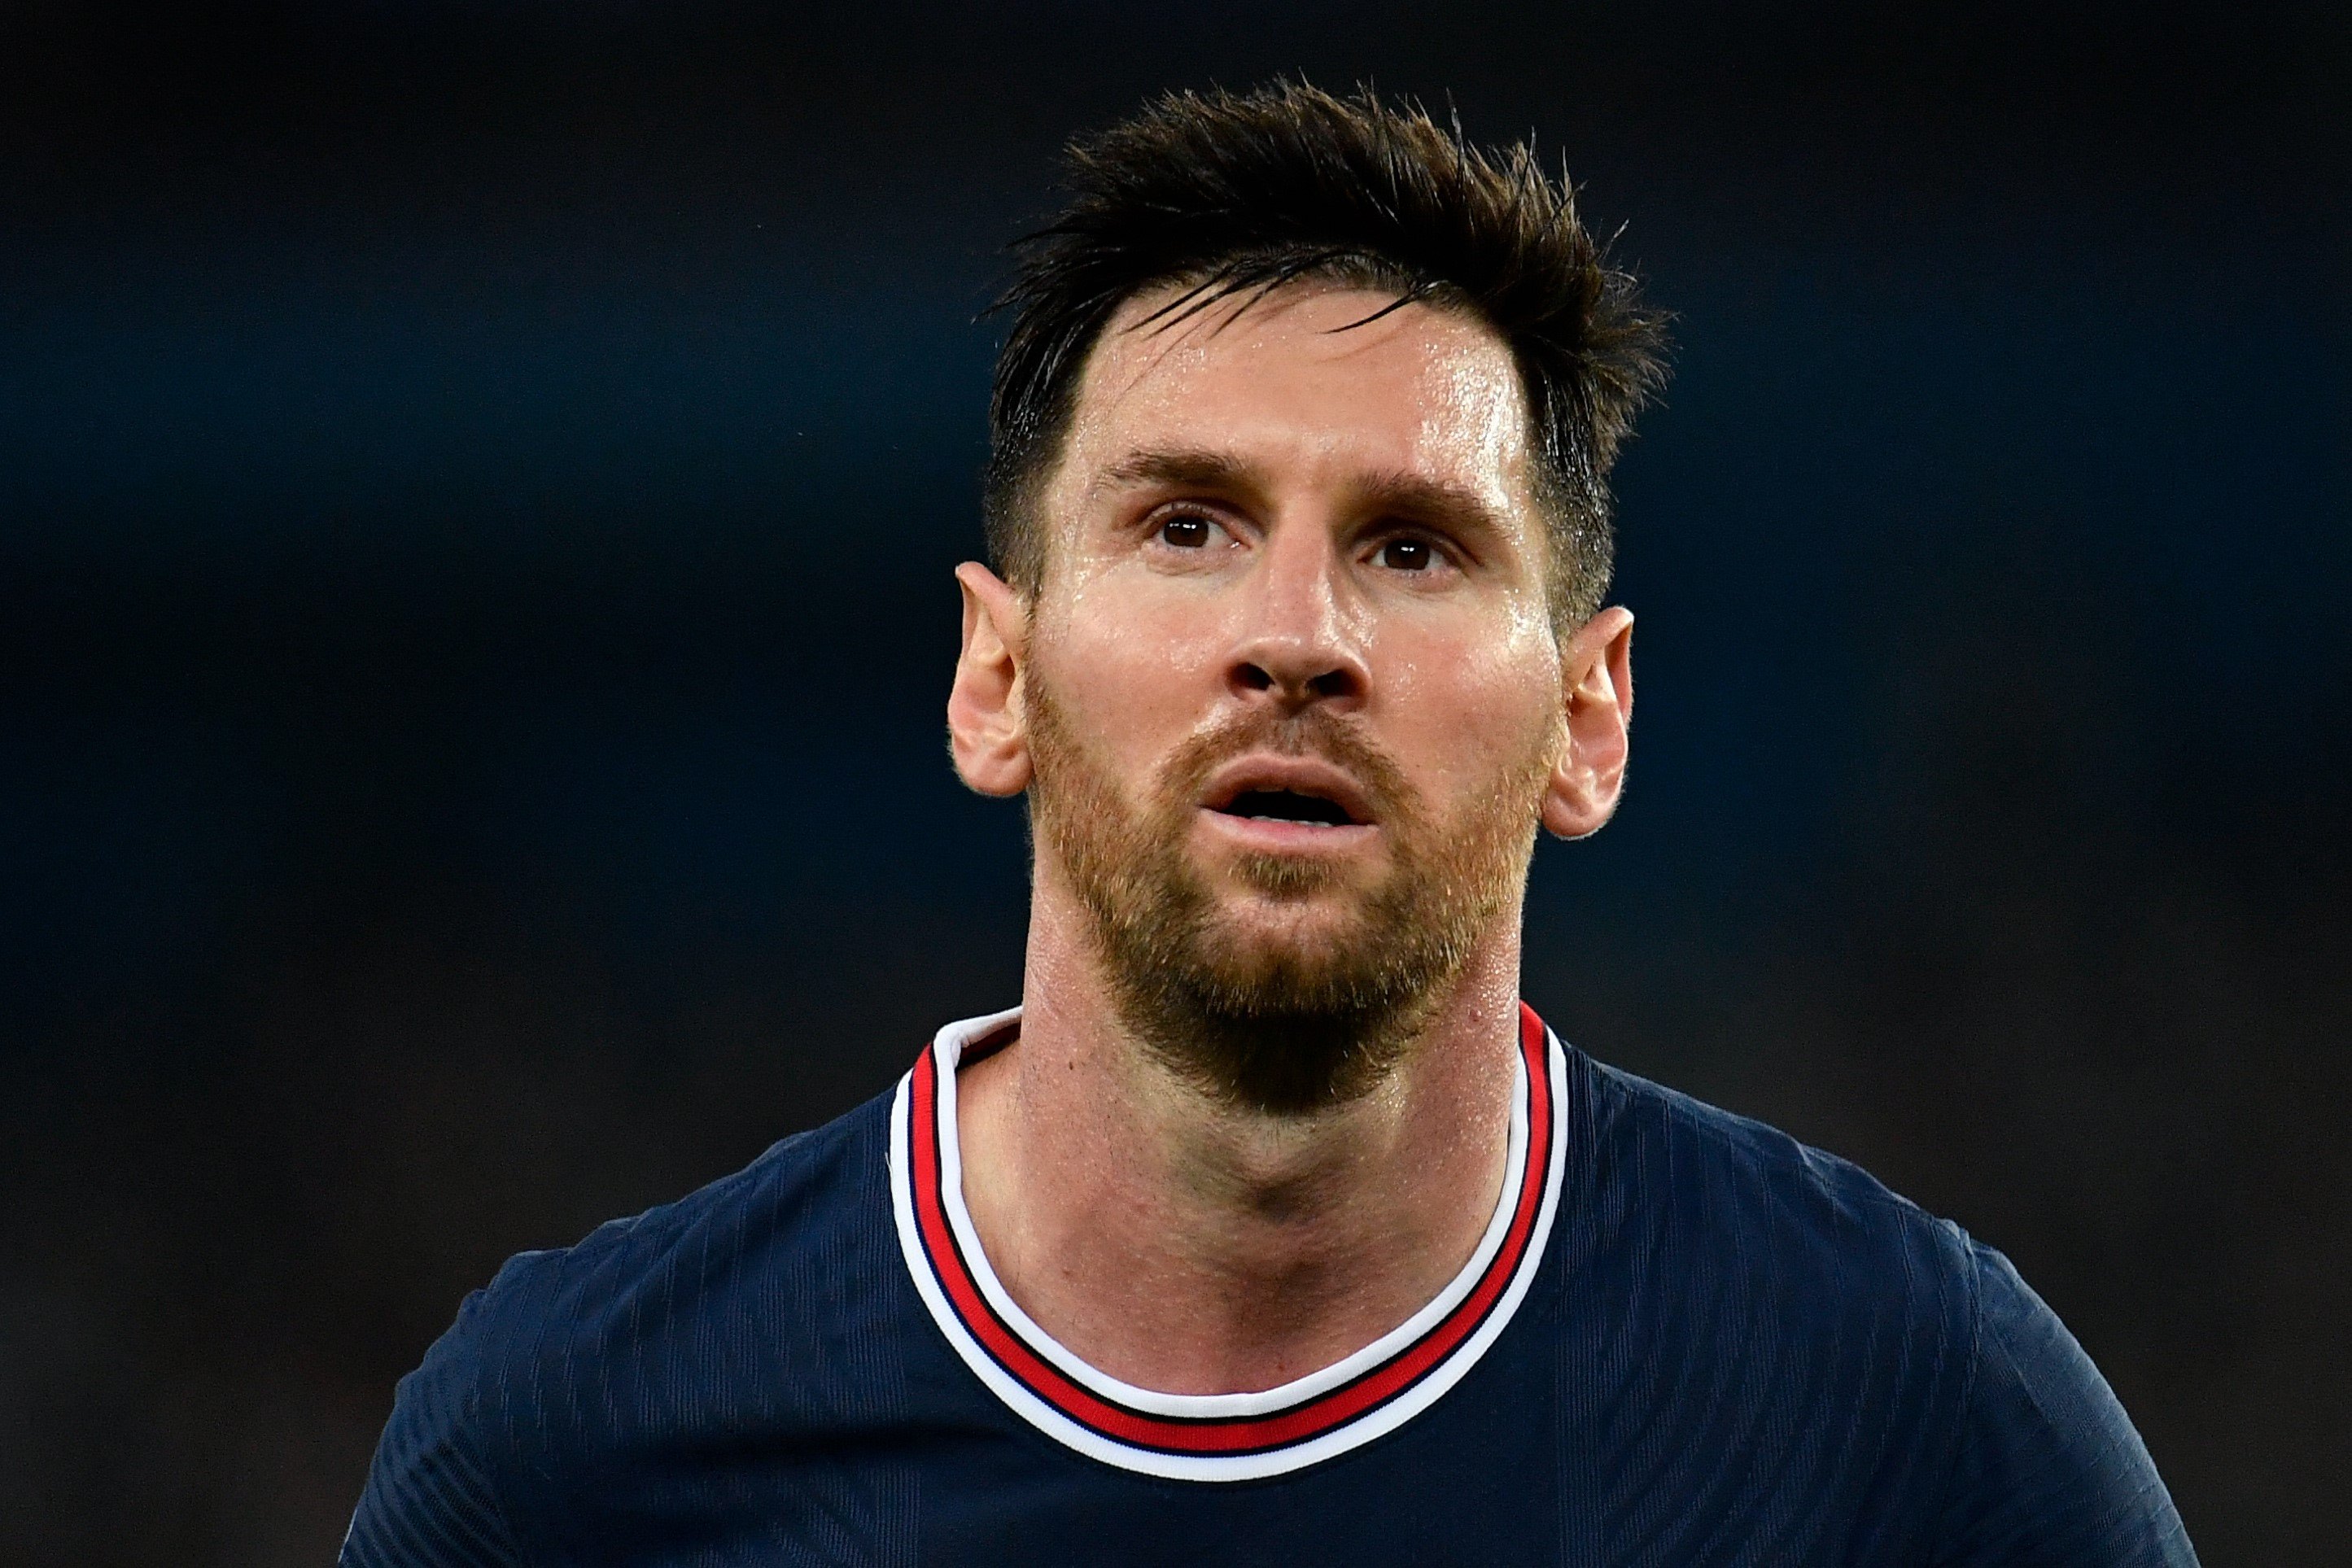 Messi i la seva marxa al PSG: "Havia decidit acabar la meva carrera al Barça"